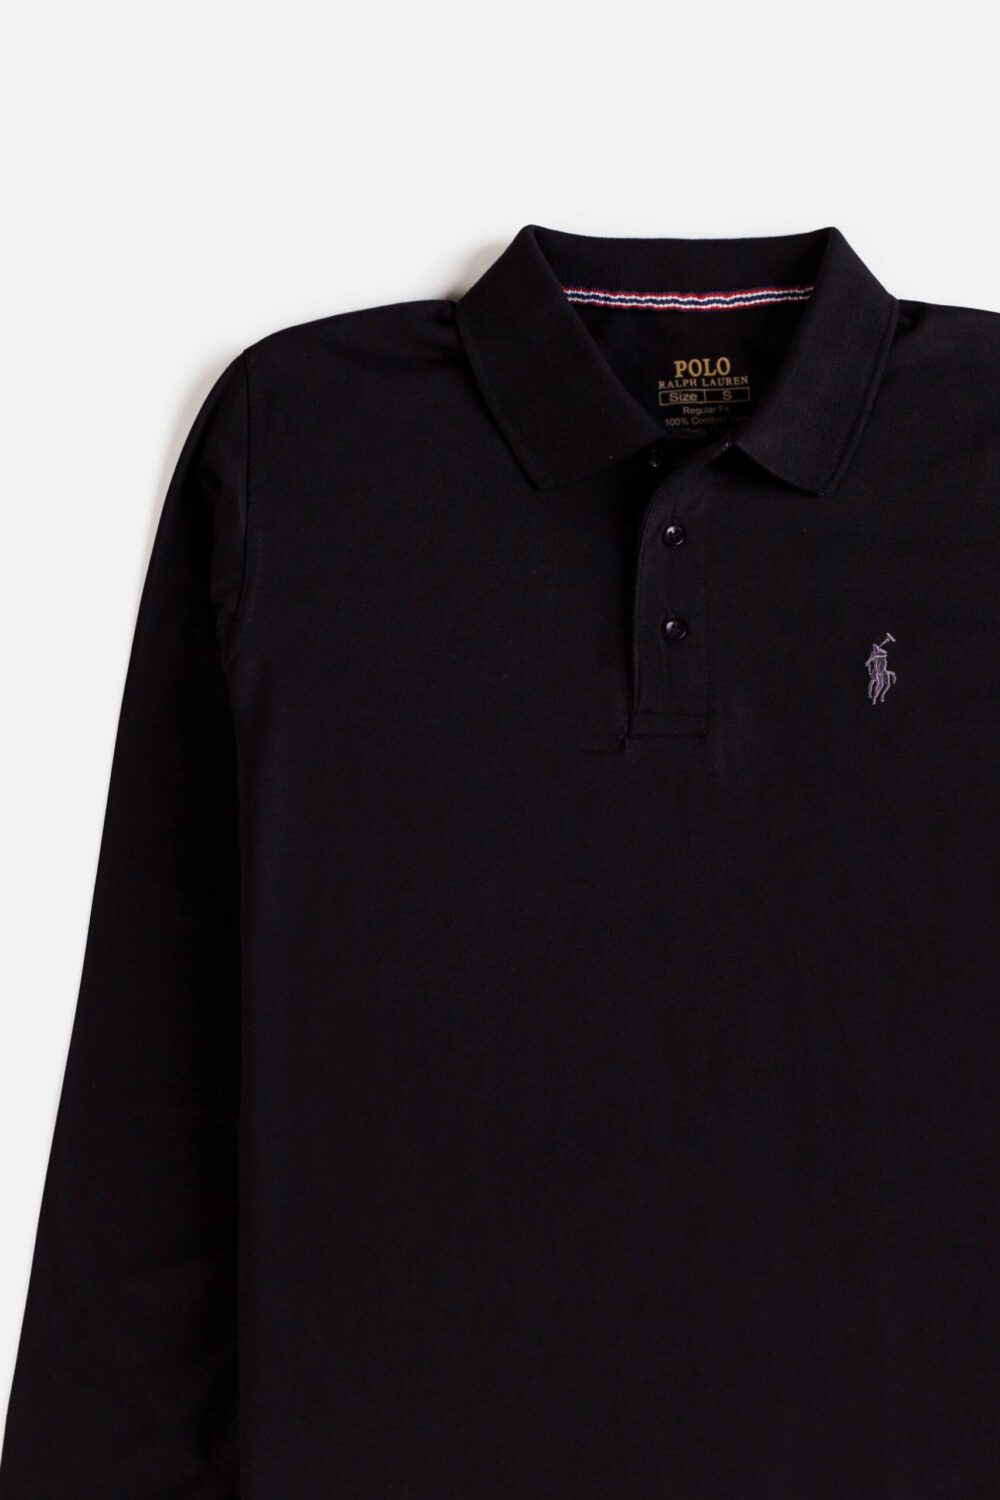 RL Premium Cotton Full Polo – Black